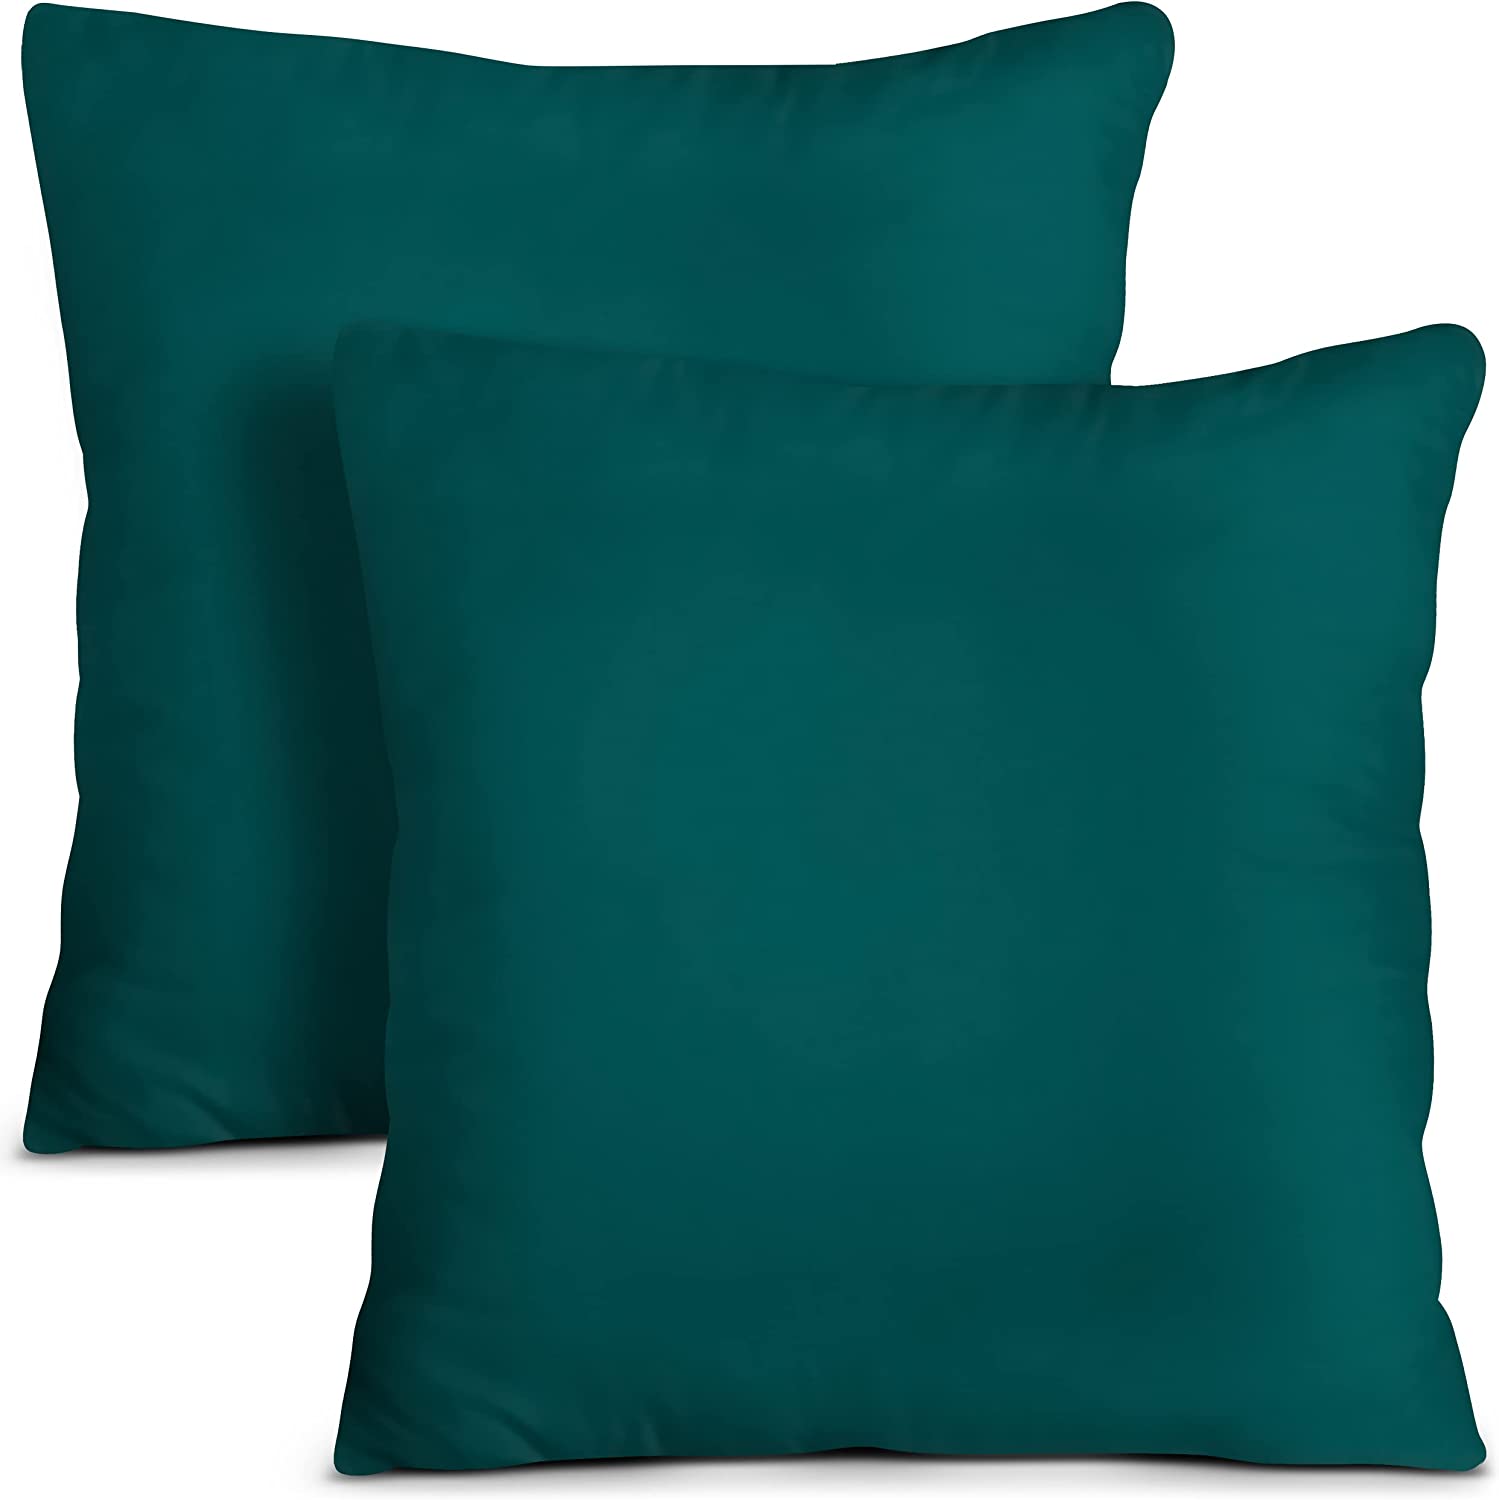  Utopia Bedding Throw Pillows (Set of 4, White), 18 x